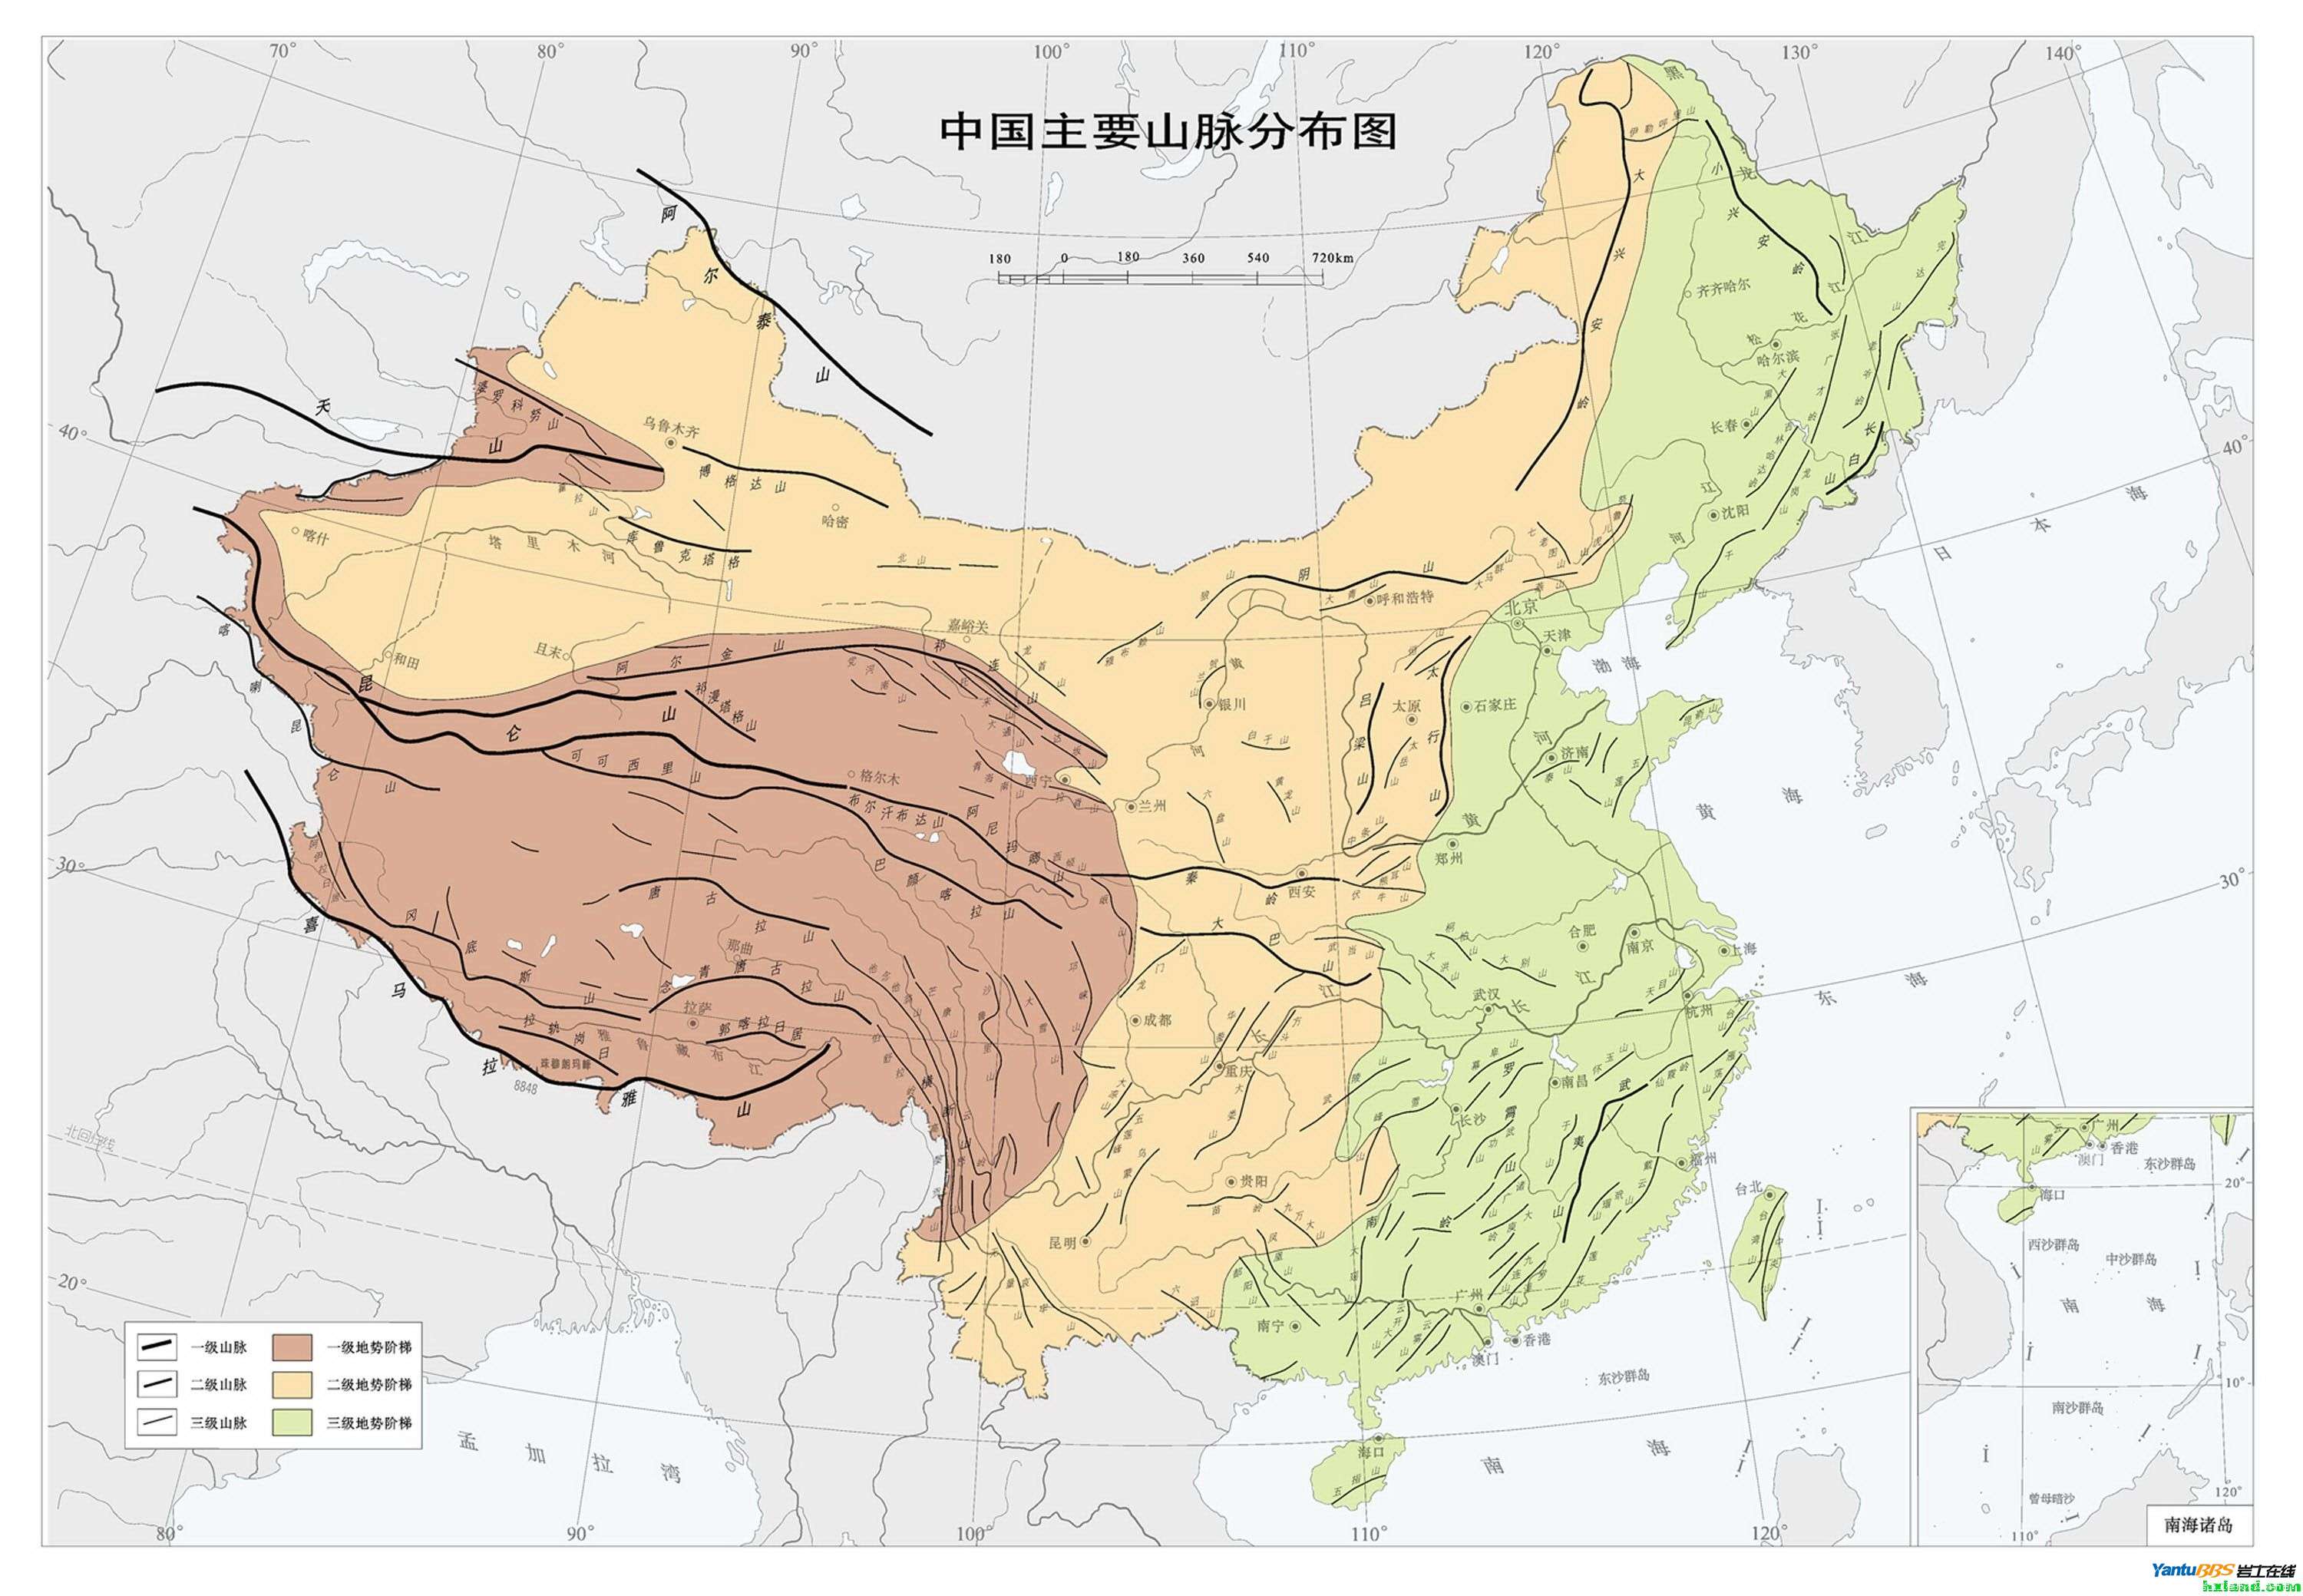 108东经中国地形剖面图图片